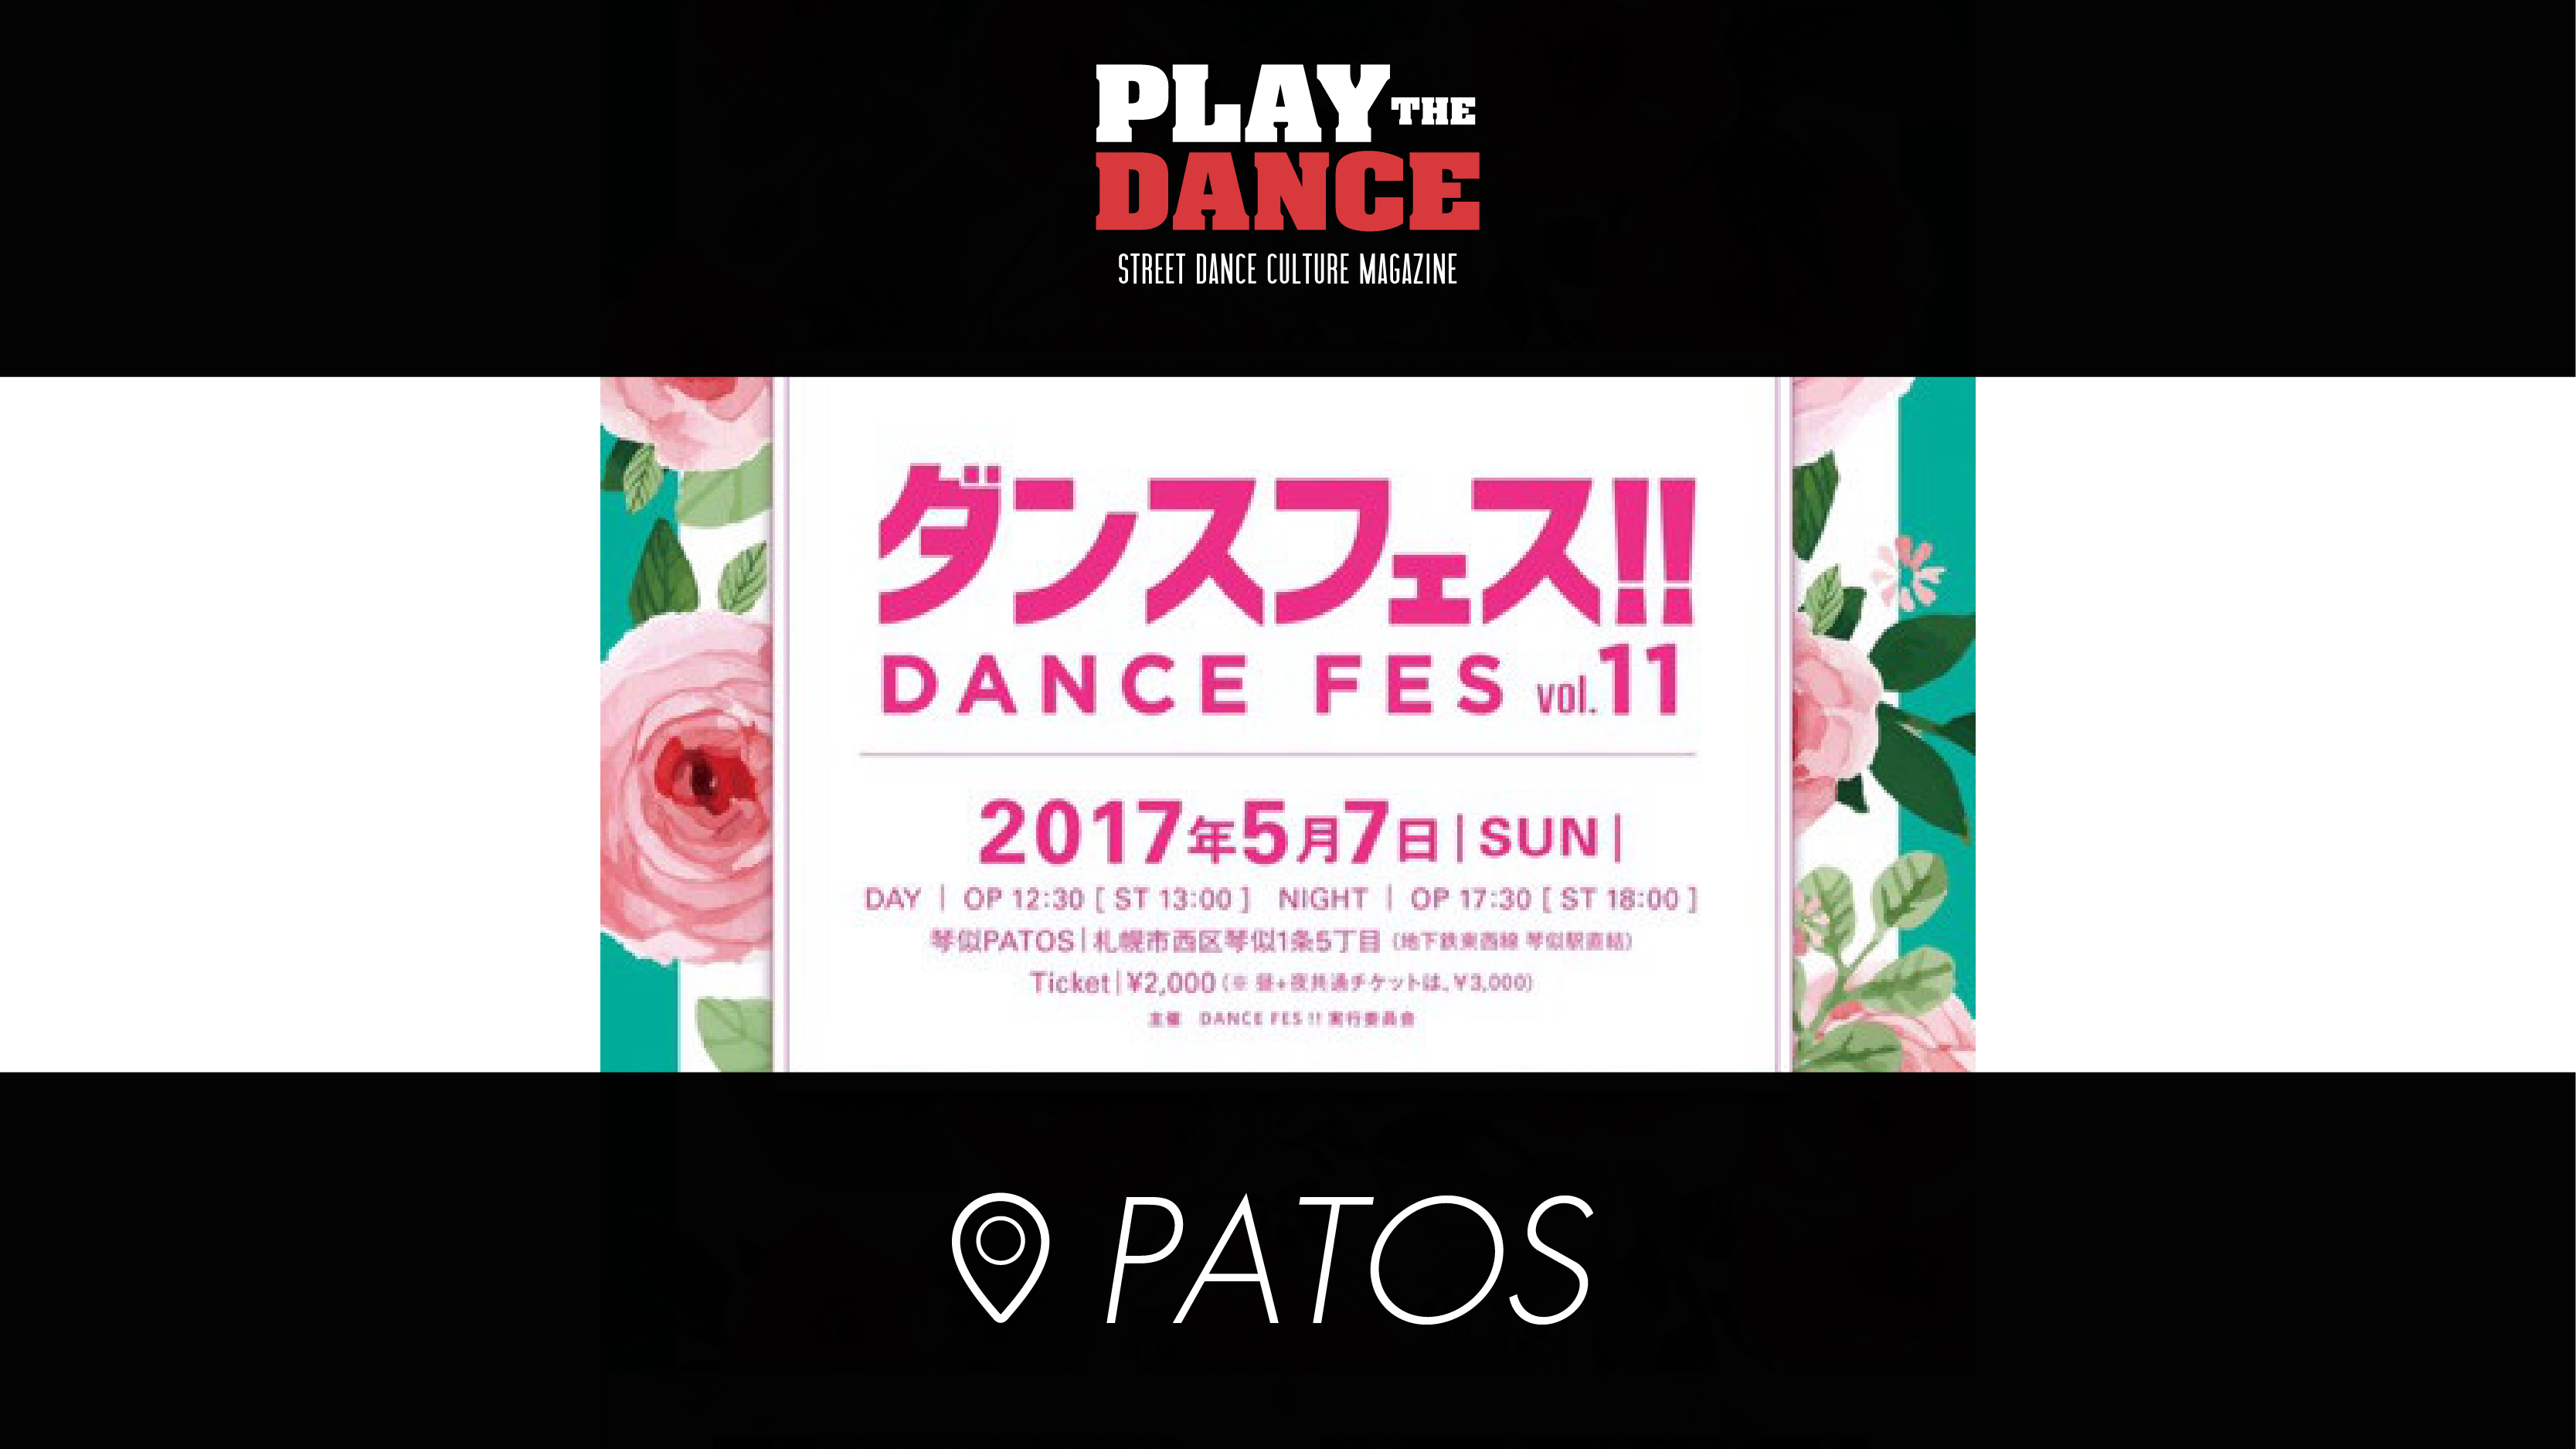 DANCE FES!! vol.11